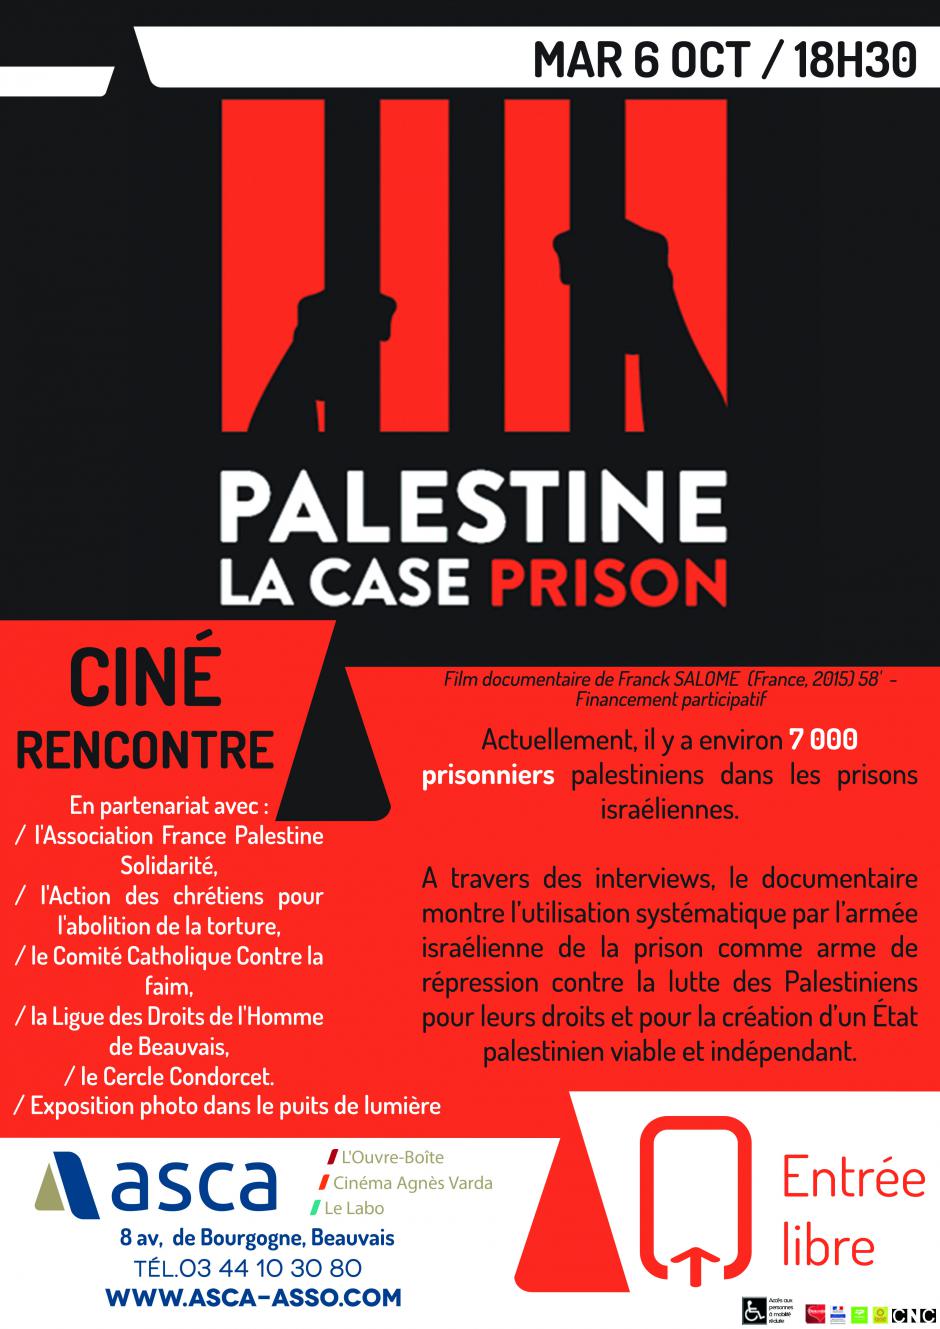 6 octobre, Beauvais - Projection-débat « Palestine, la case prison »